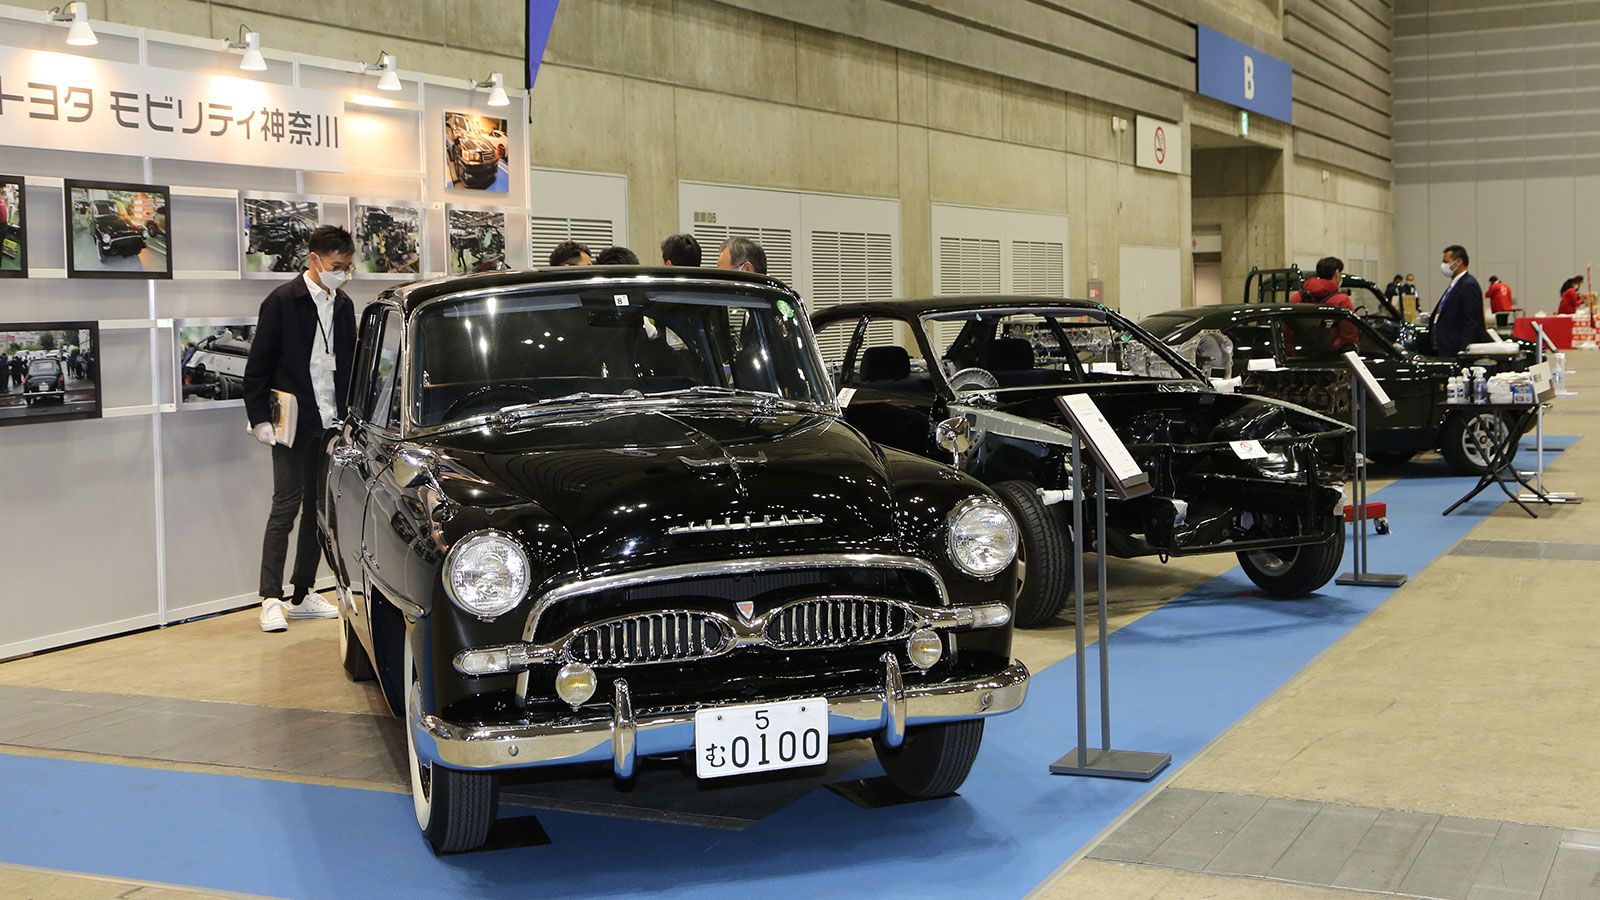 トヨタ新車販売店が旧車レストアに注目する理由 神奈川と富山のディーラーの絶版車サービス | トレンド | 東洋経済オンライン